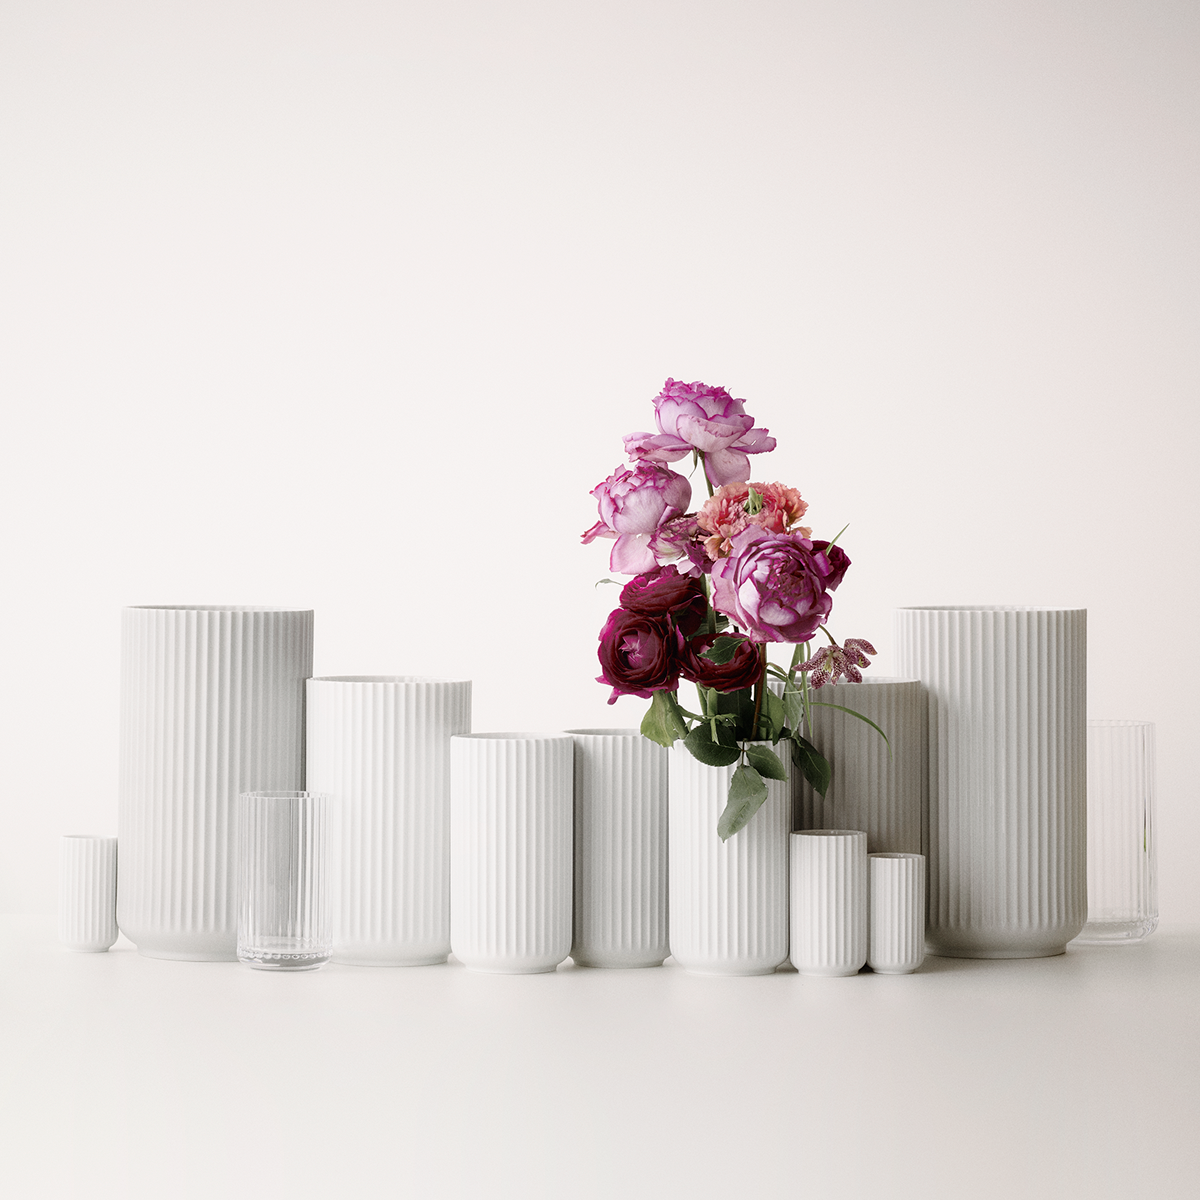 Vase H12,5 cm Porcelain White